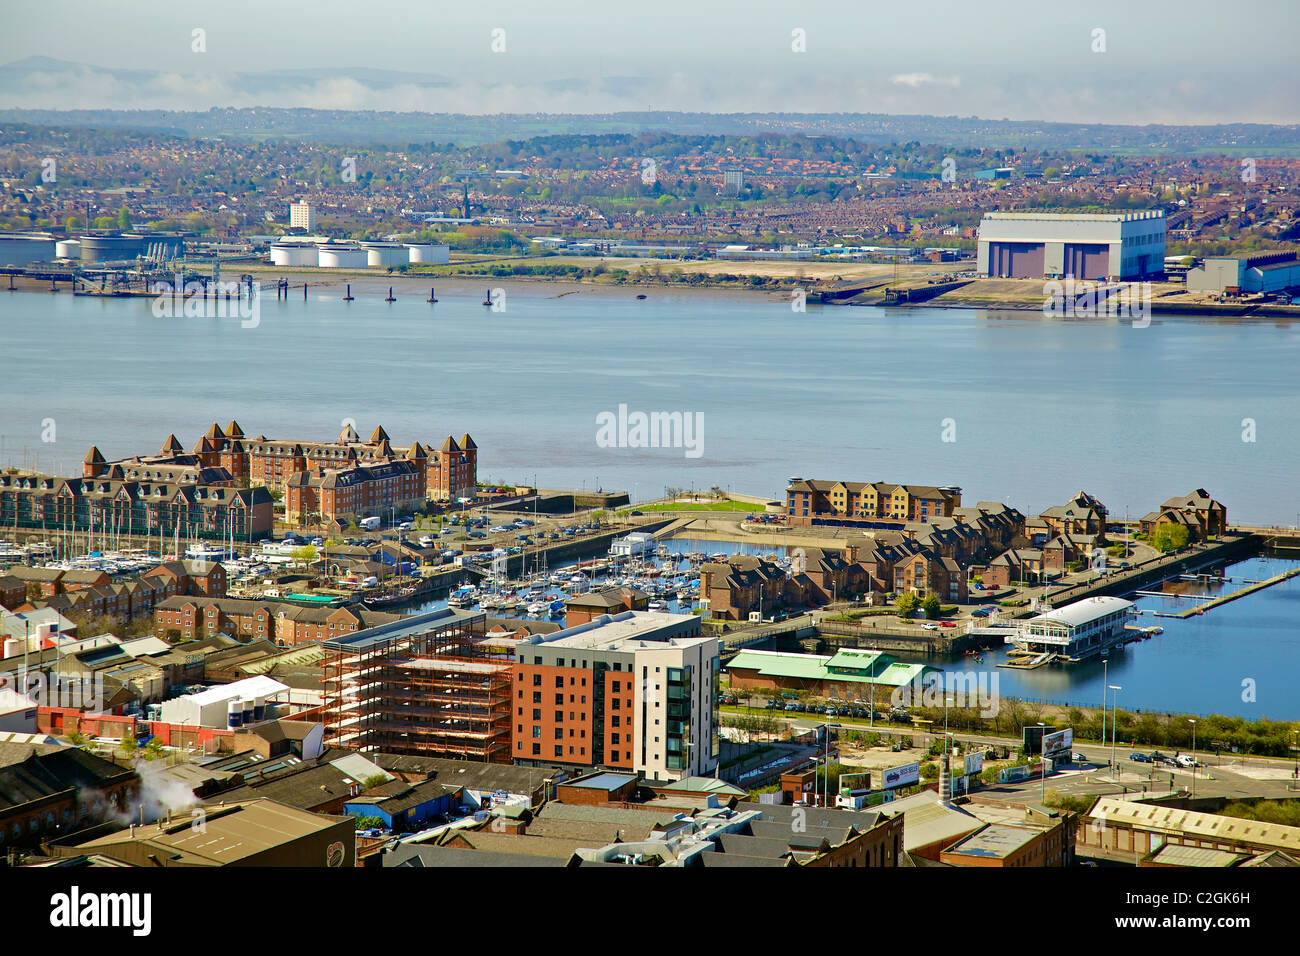 Una veduta aerea del centro città di Liverpool cercando attraverso la marina verso il cammello Lairds cantiere navale. Foto Stock